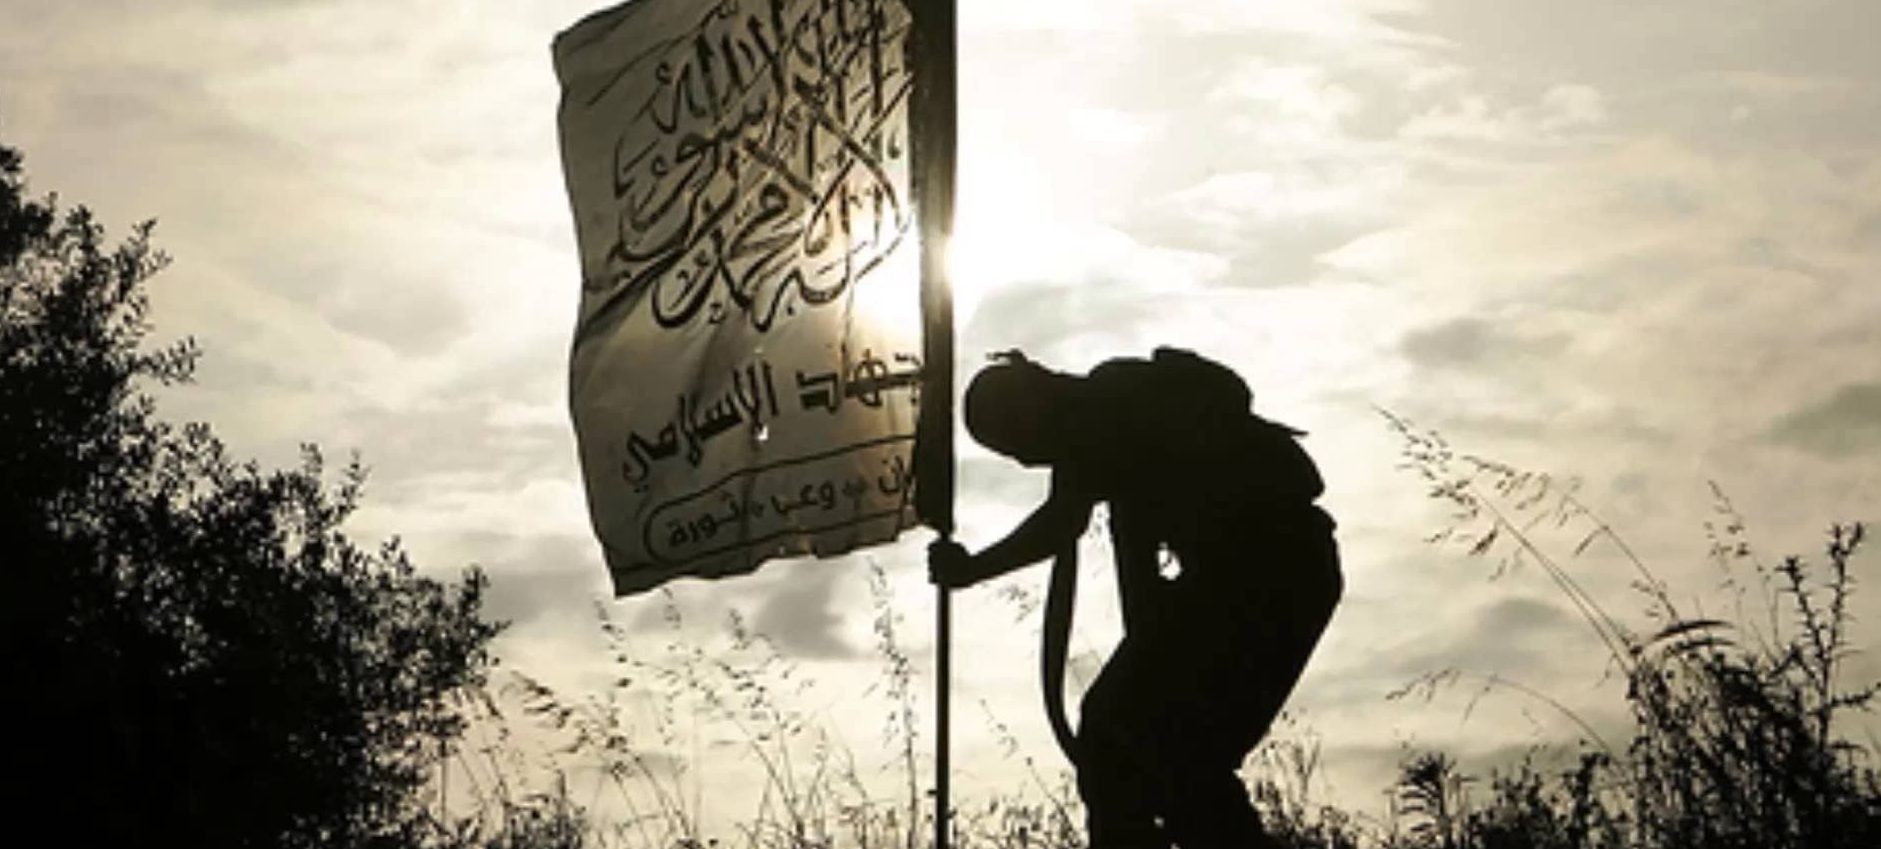 Comment le djihadisme recrute grâce aux réseaux sociaux